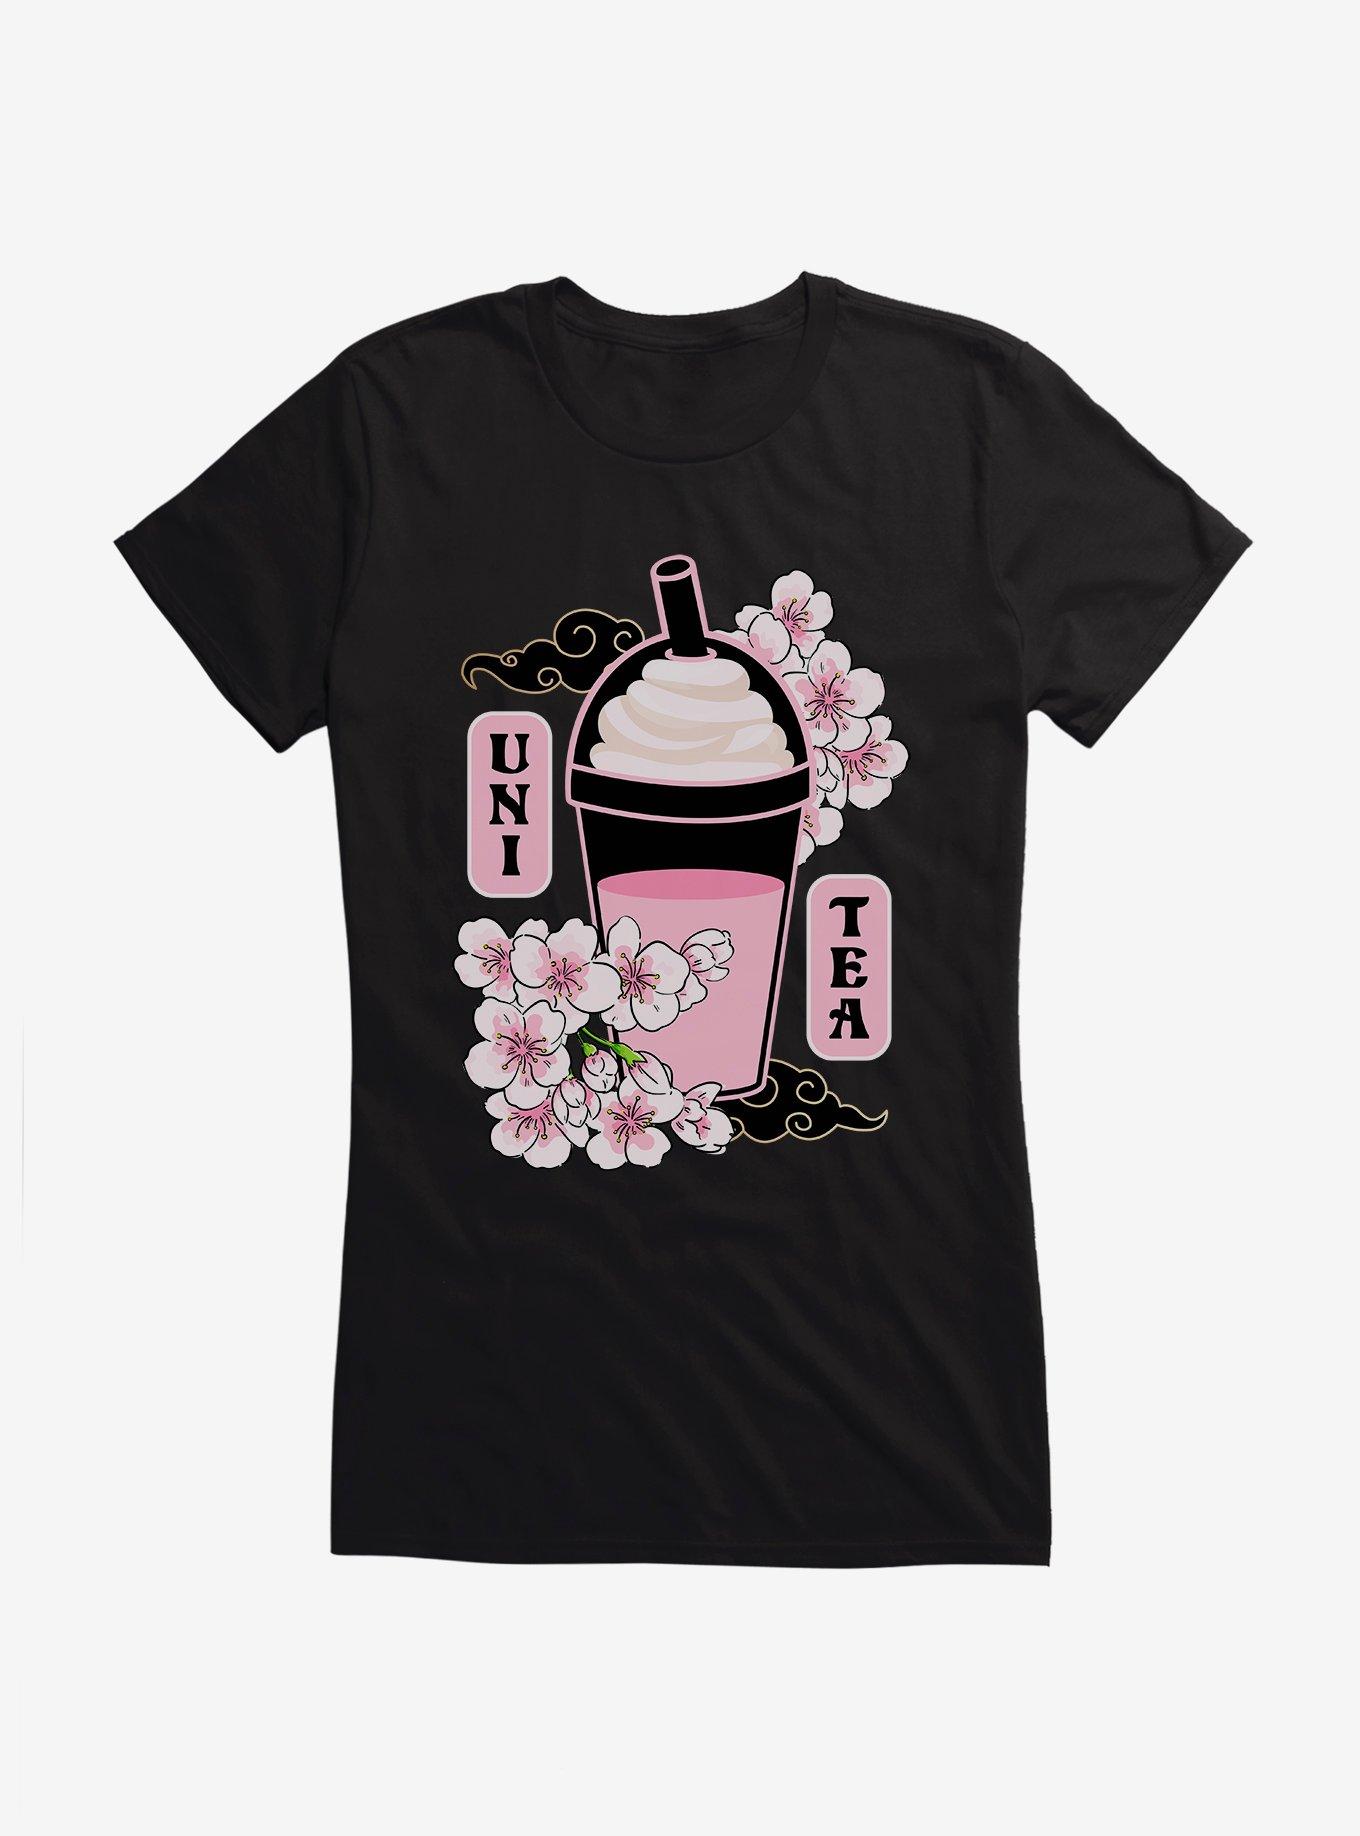 Uni Tea Cherry Blossom Boba Girls T-Shirt